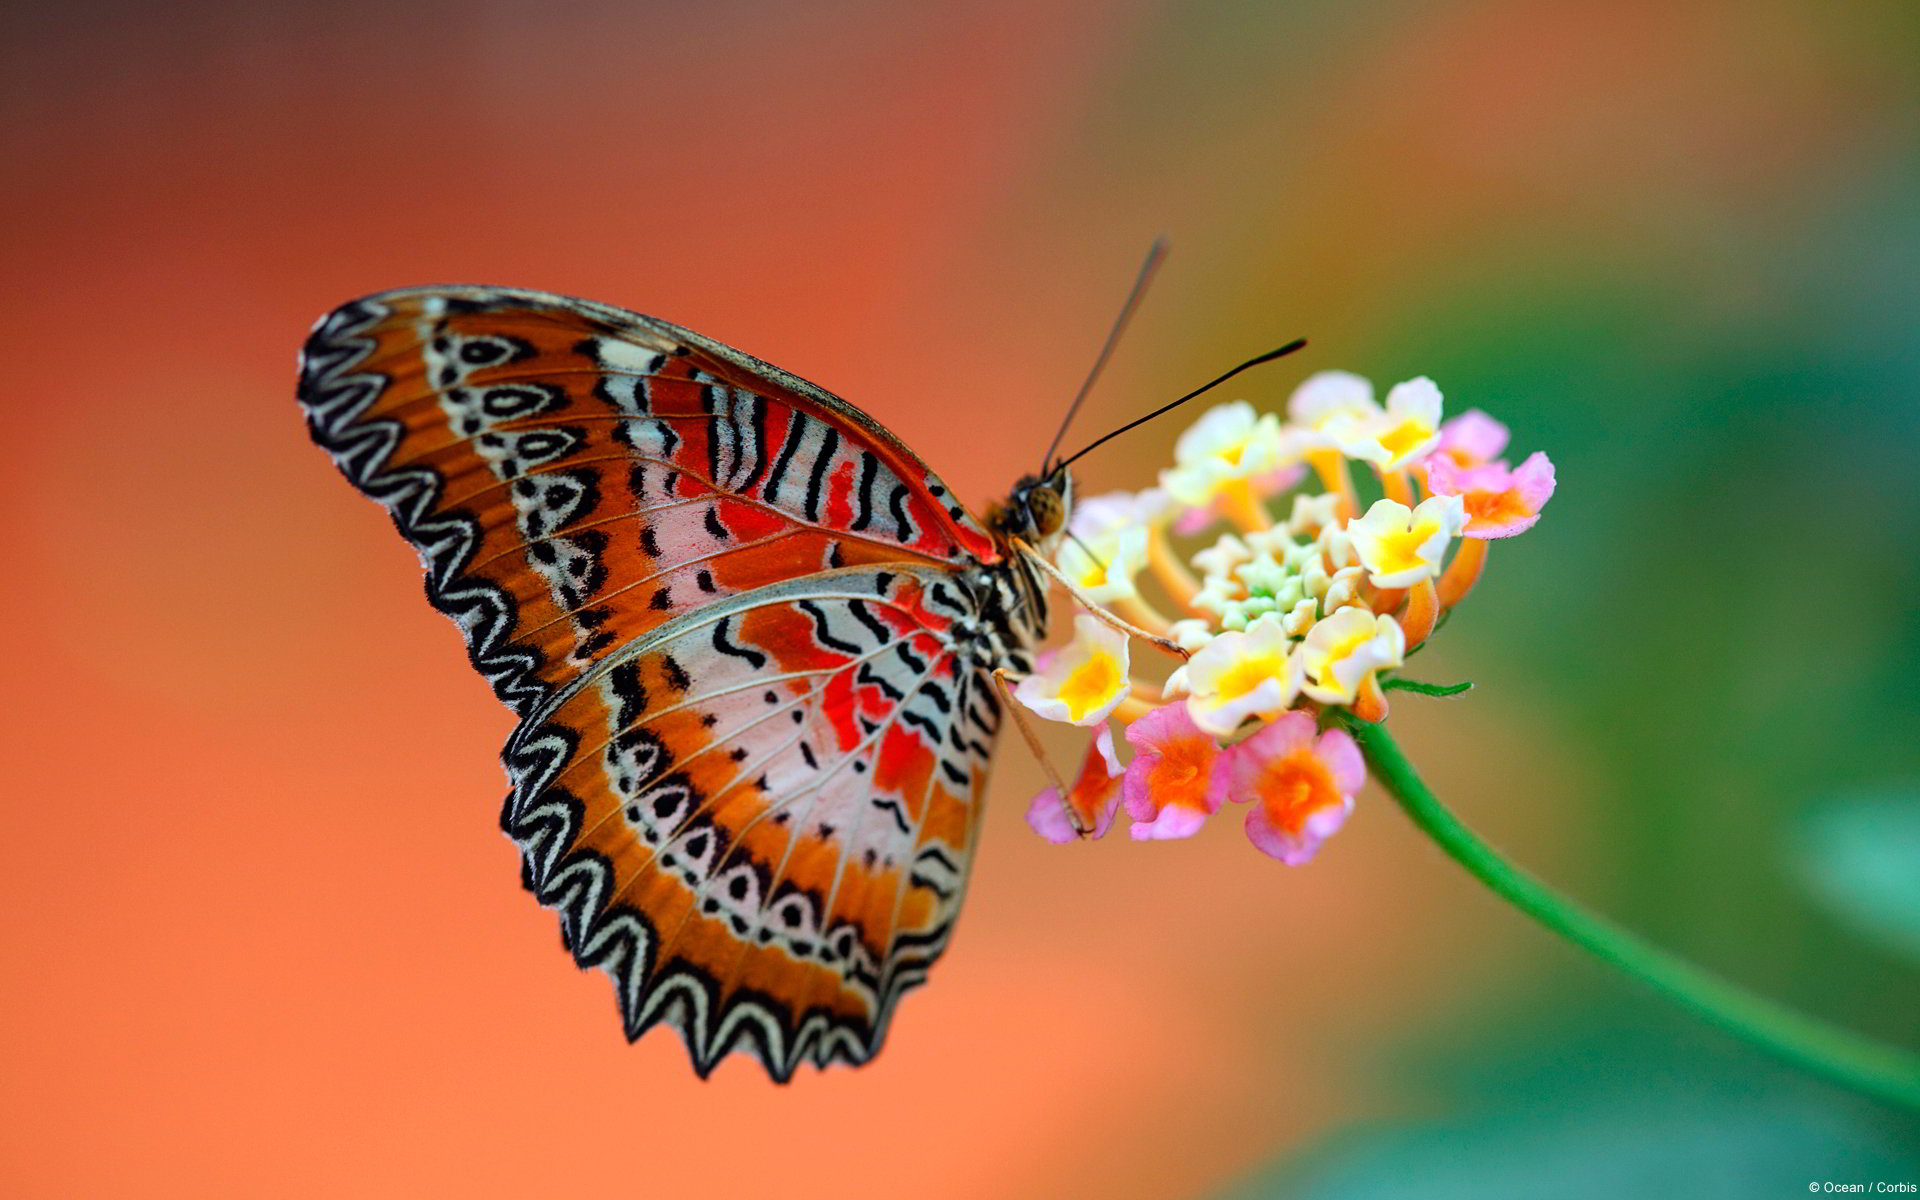 Hình ảnh những con bướm đẹp